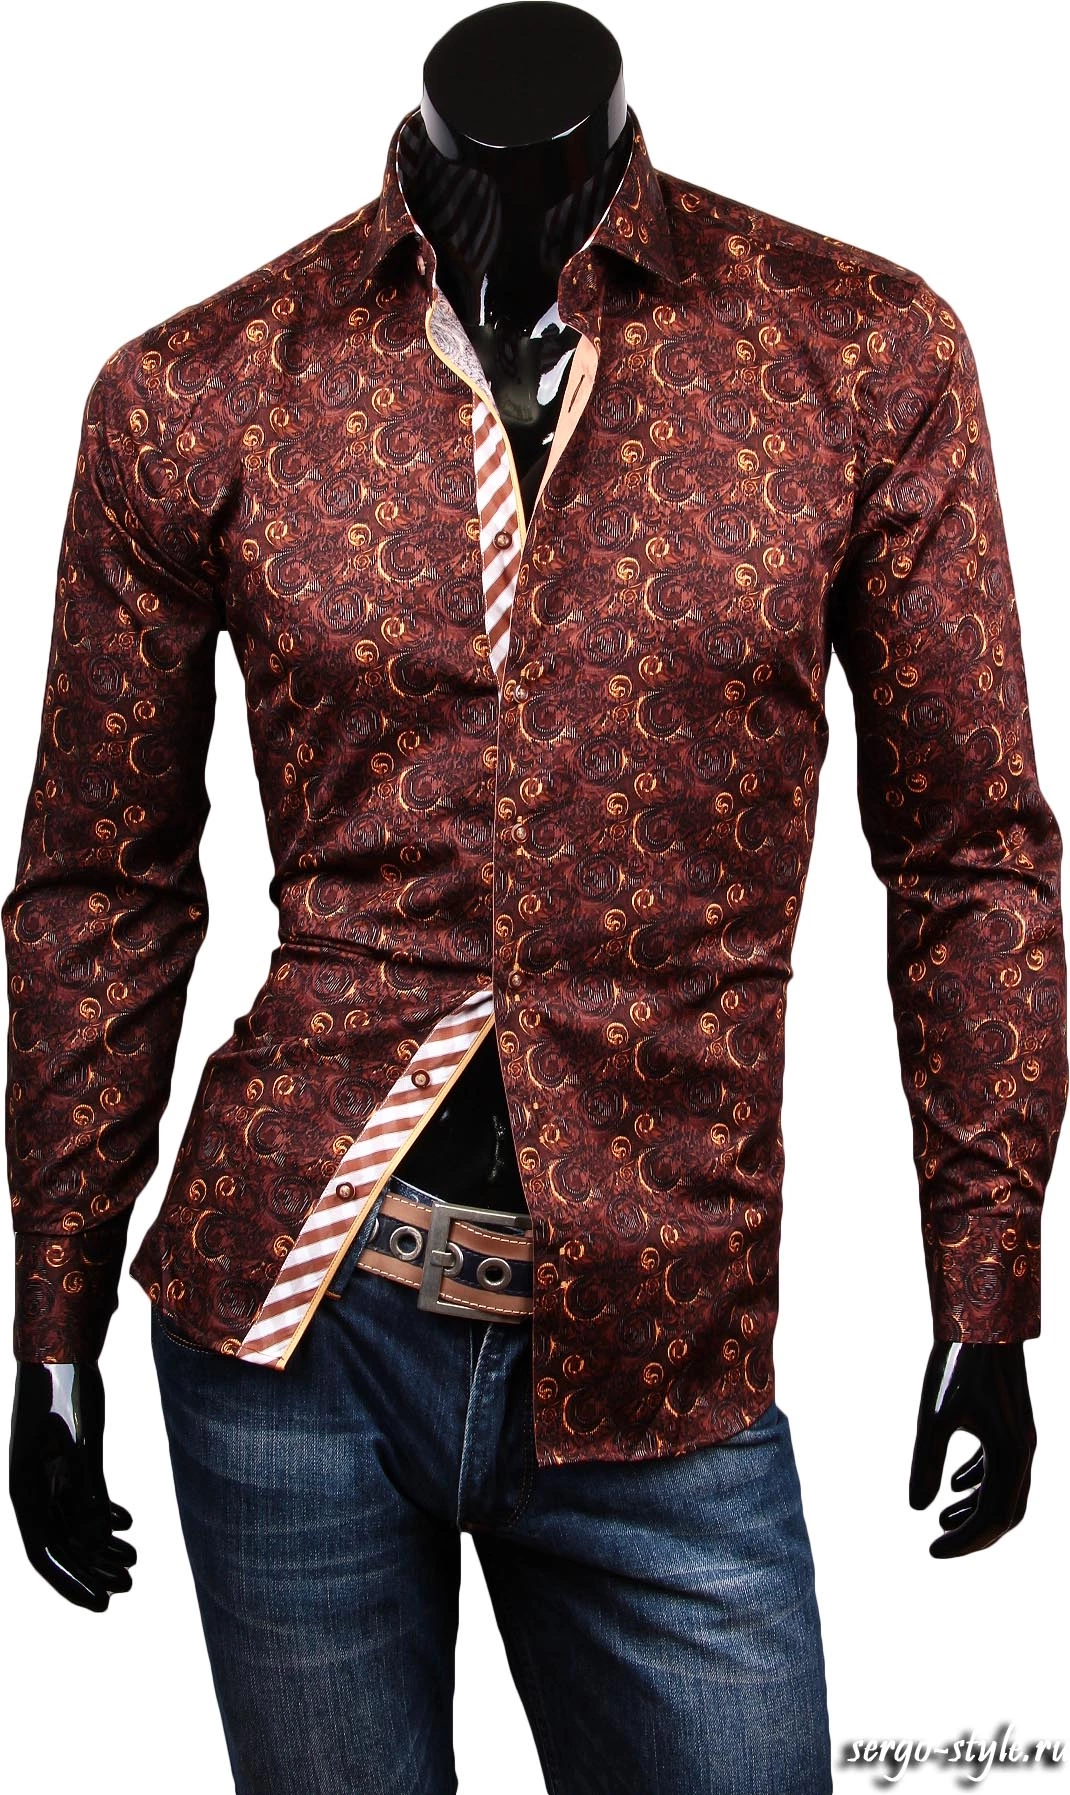 Модная приталенная мужская рубашка коричневого цвета в огурцах